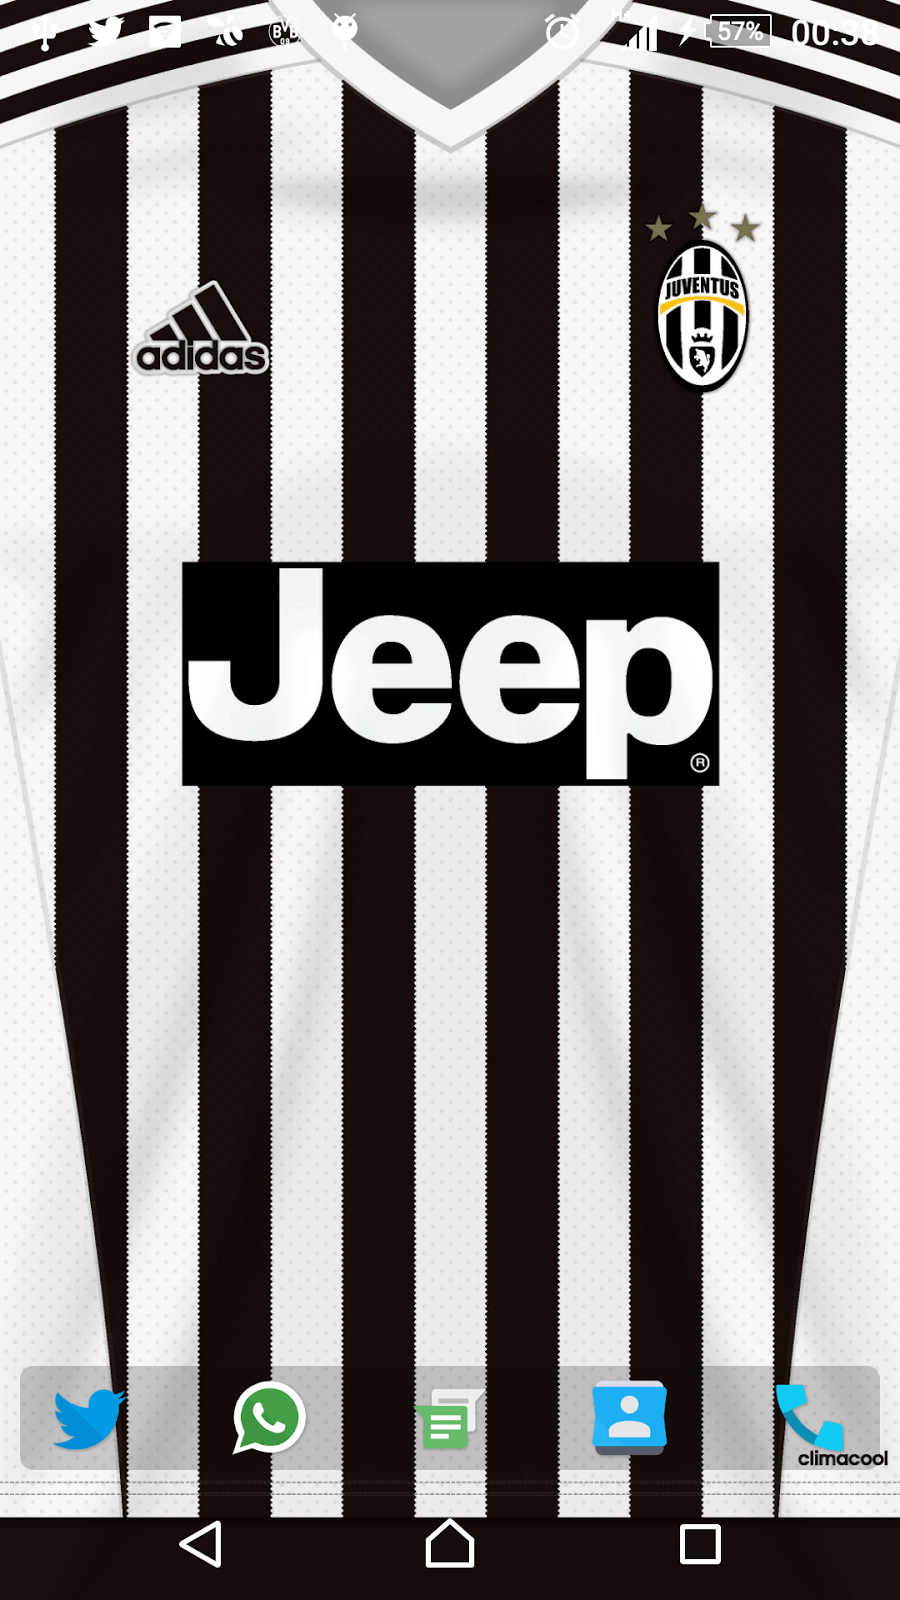 Juventus iPhone Wallpaper